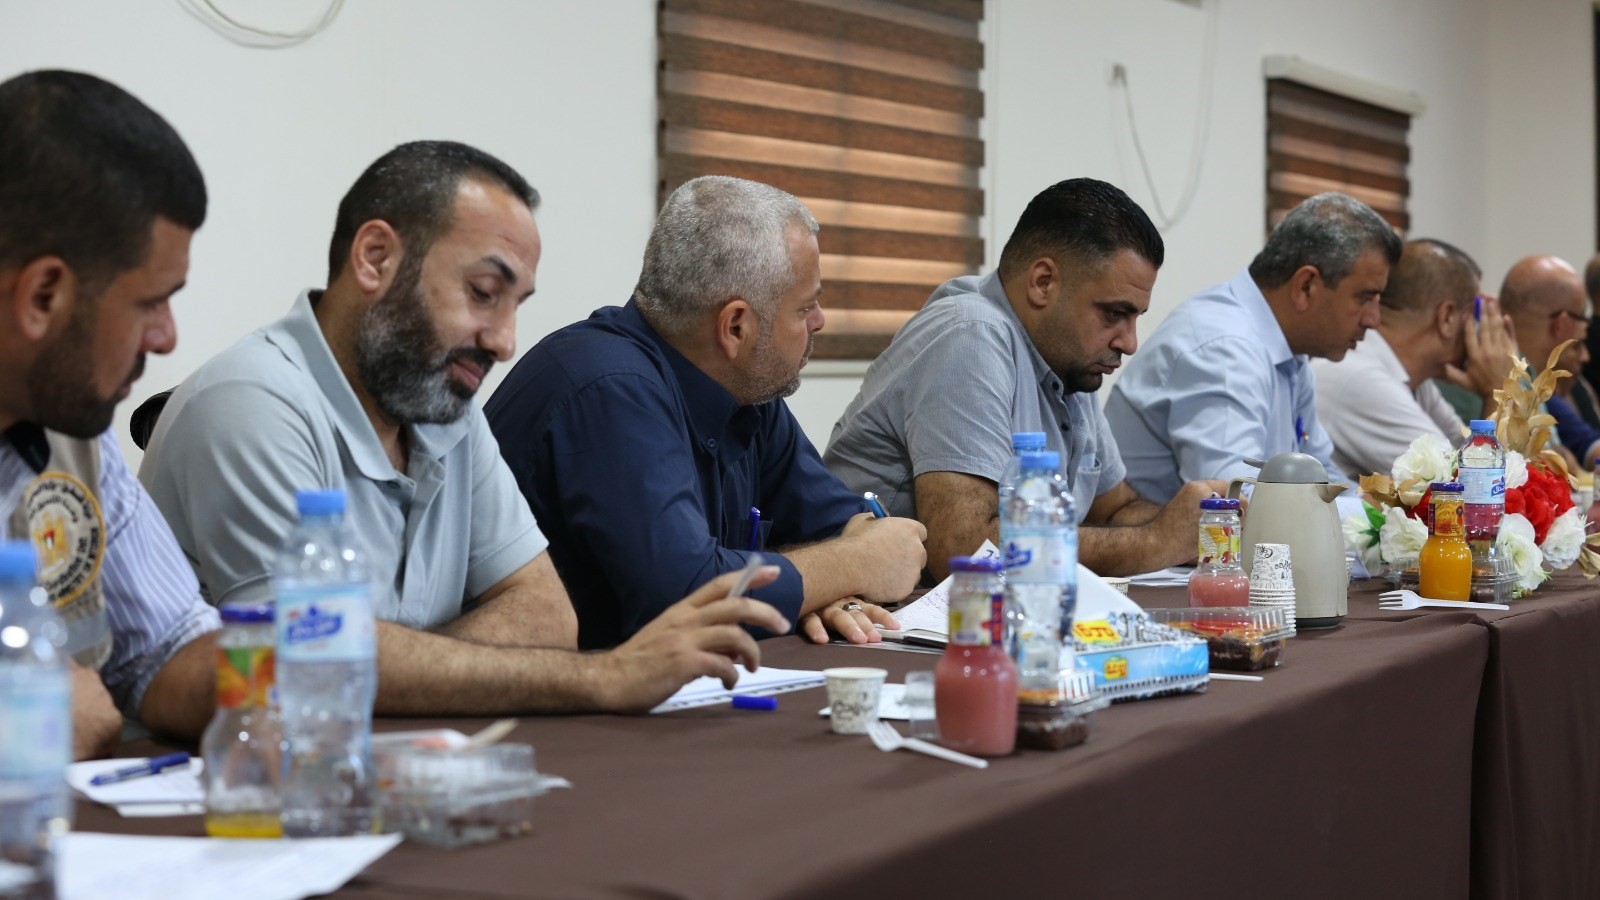 لقاء عقدته وحدة التنسيق الفصائلي بوزارة الداخلية مع منسقي الفصائل والحالات العسكرية بقطاع غزة 1.jpeg